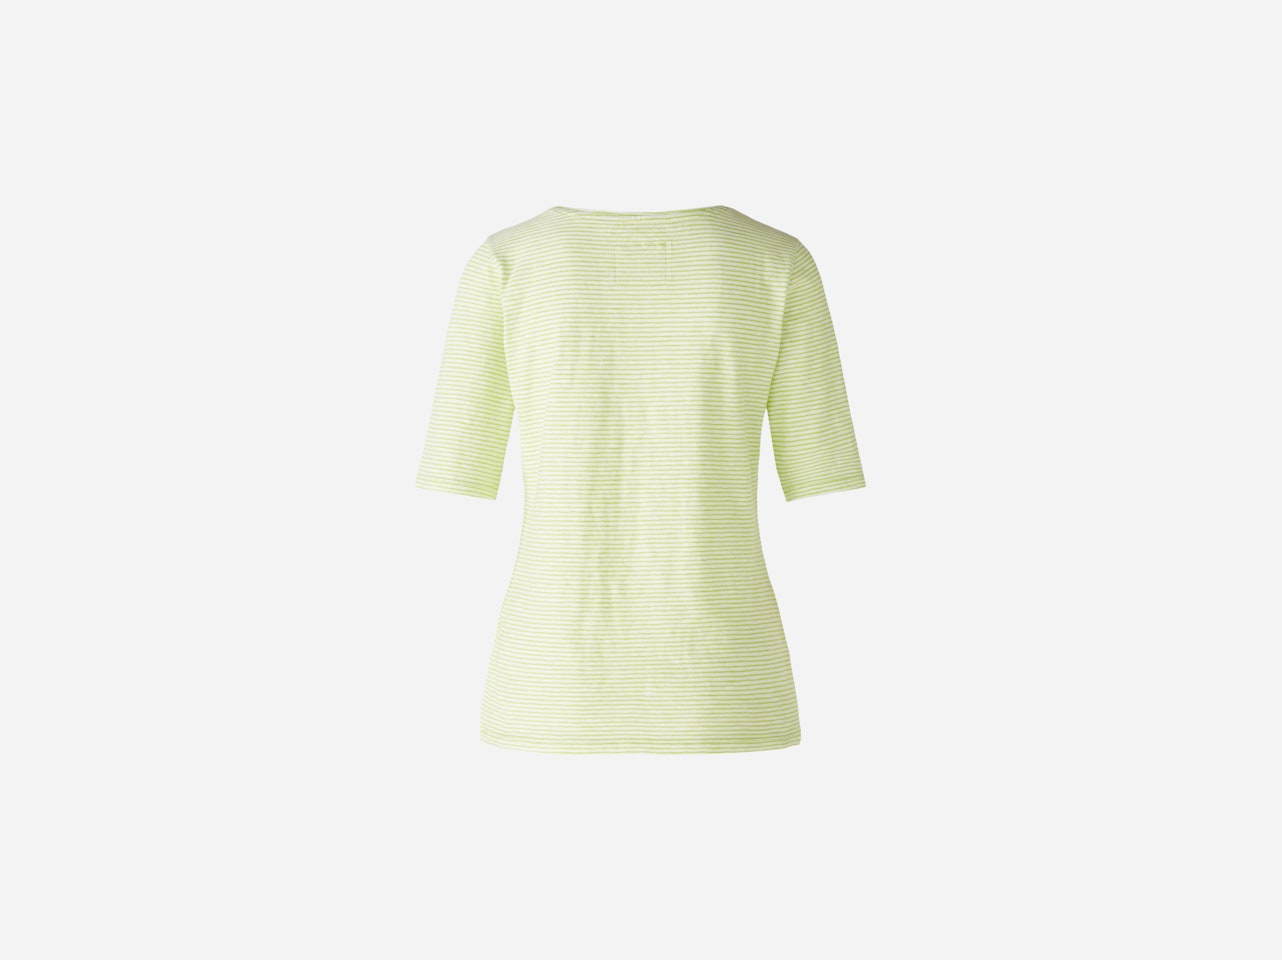 Bild 7 von T-shirt organic cotton in white green | Oui